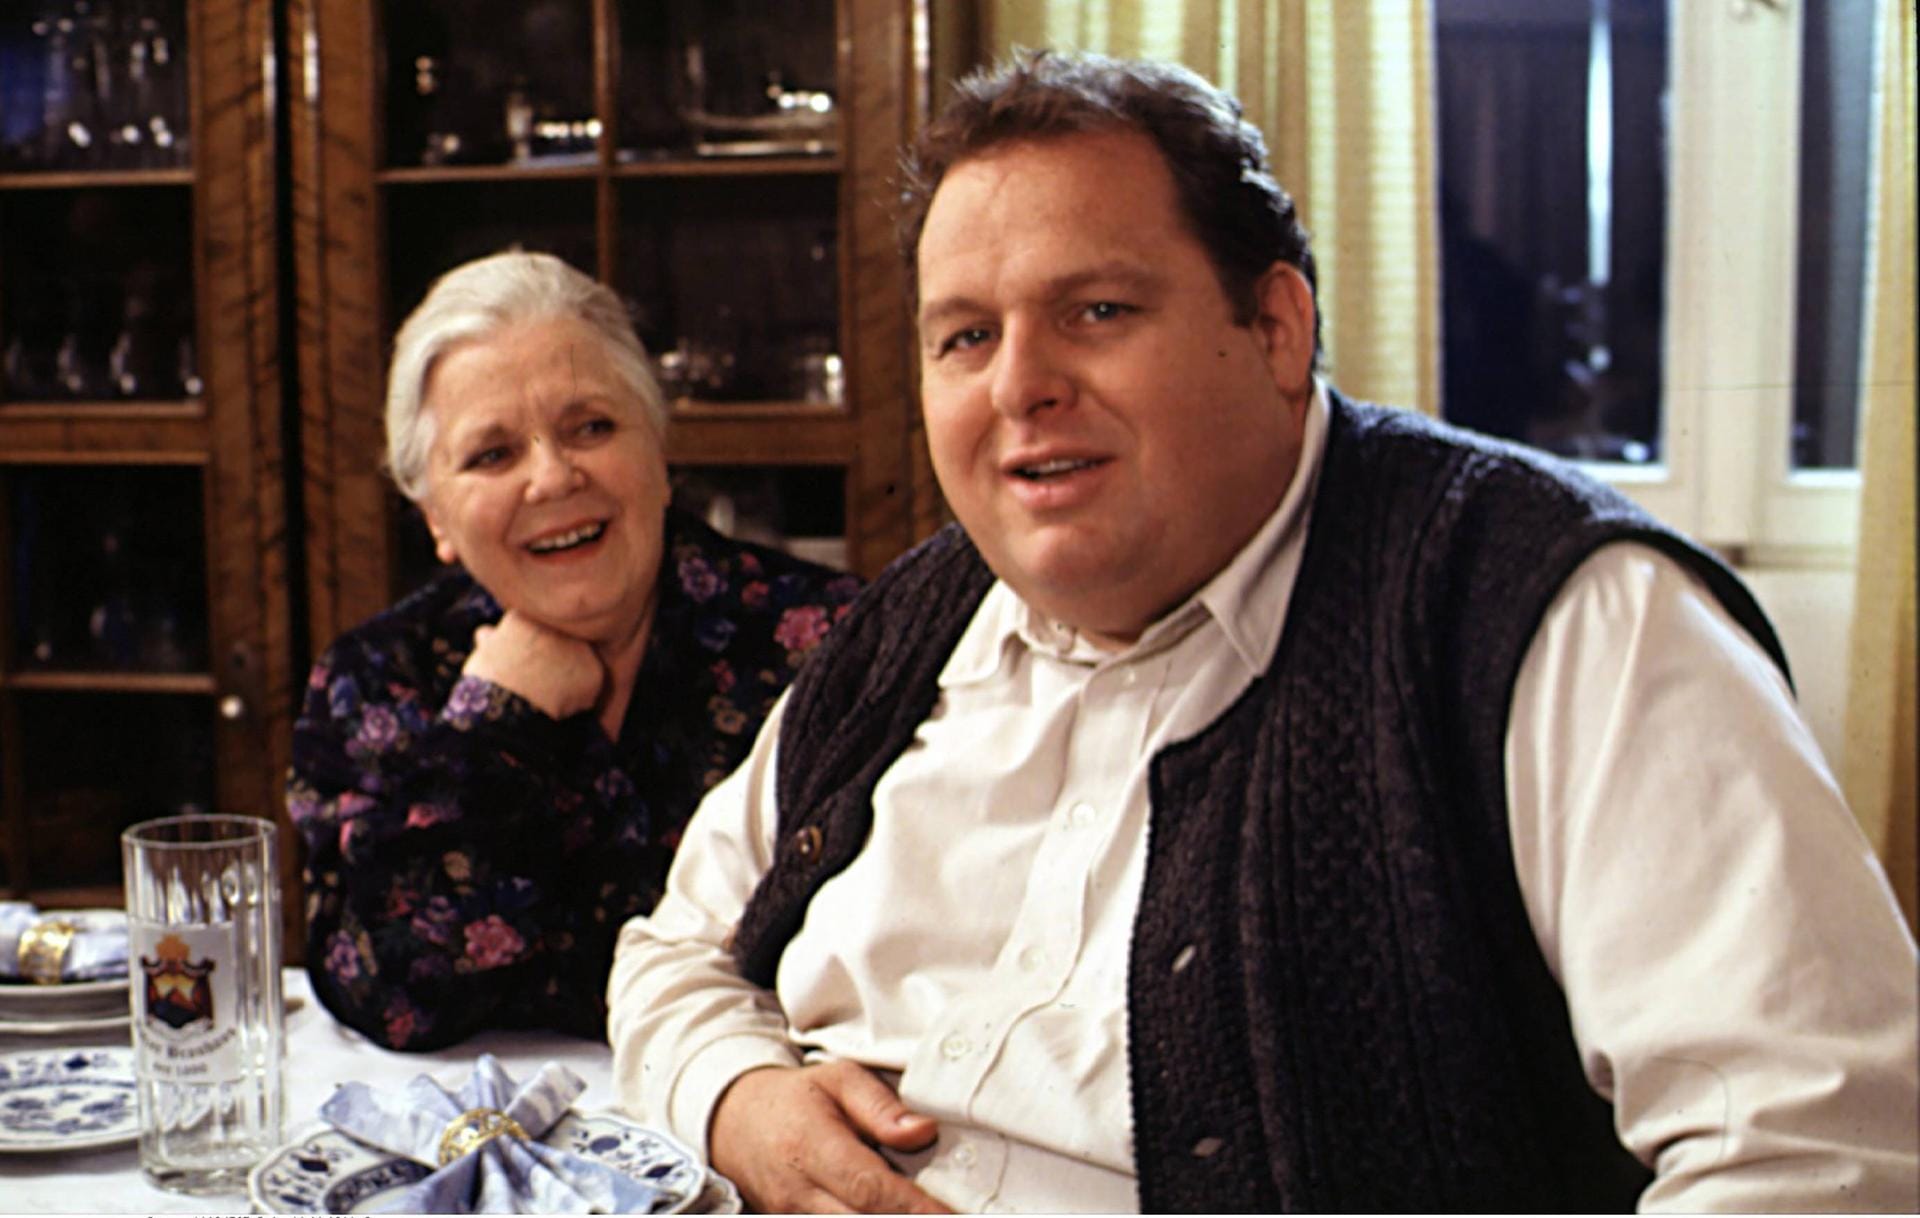 Pfundskerl: Ruth Drexel und Ottfried Fischer sorgten in der TV-Serie "Der Bulle von Tölz" für viele Lacher.